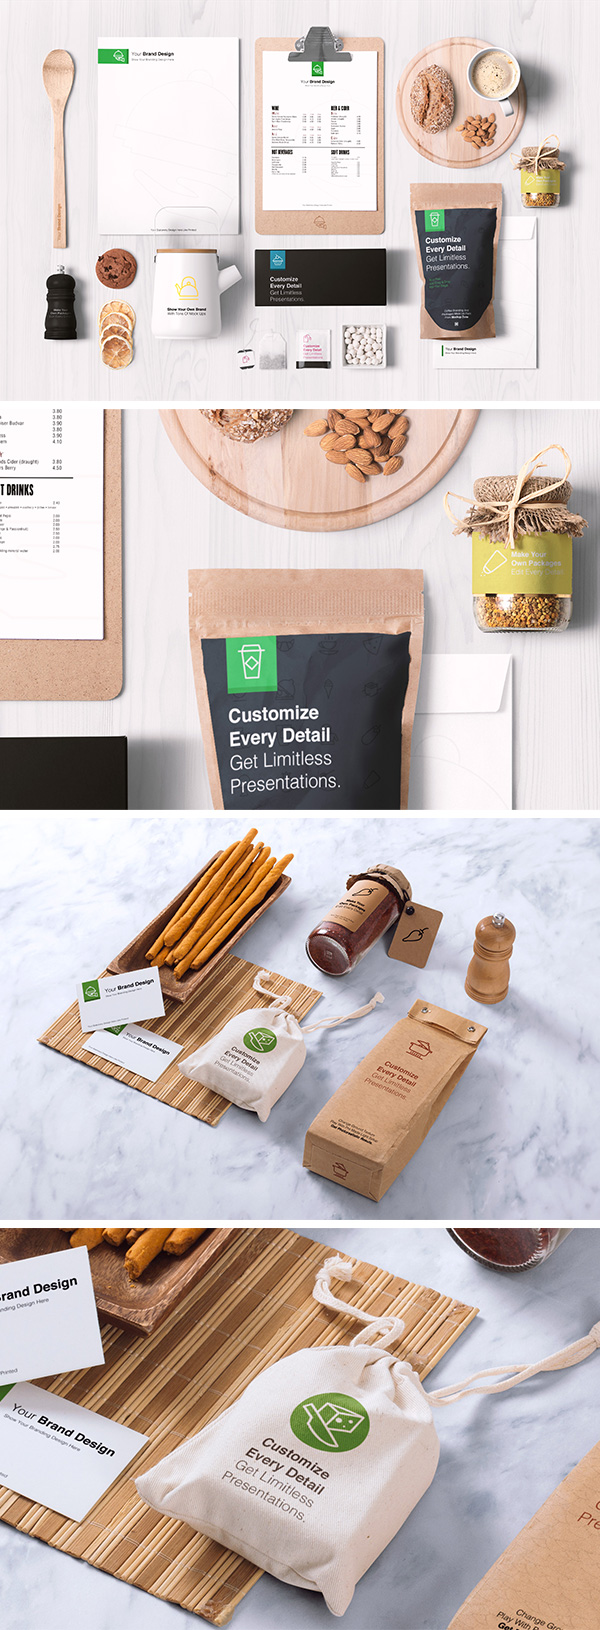 Food Packaging & Branding Mockup Free Download